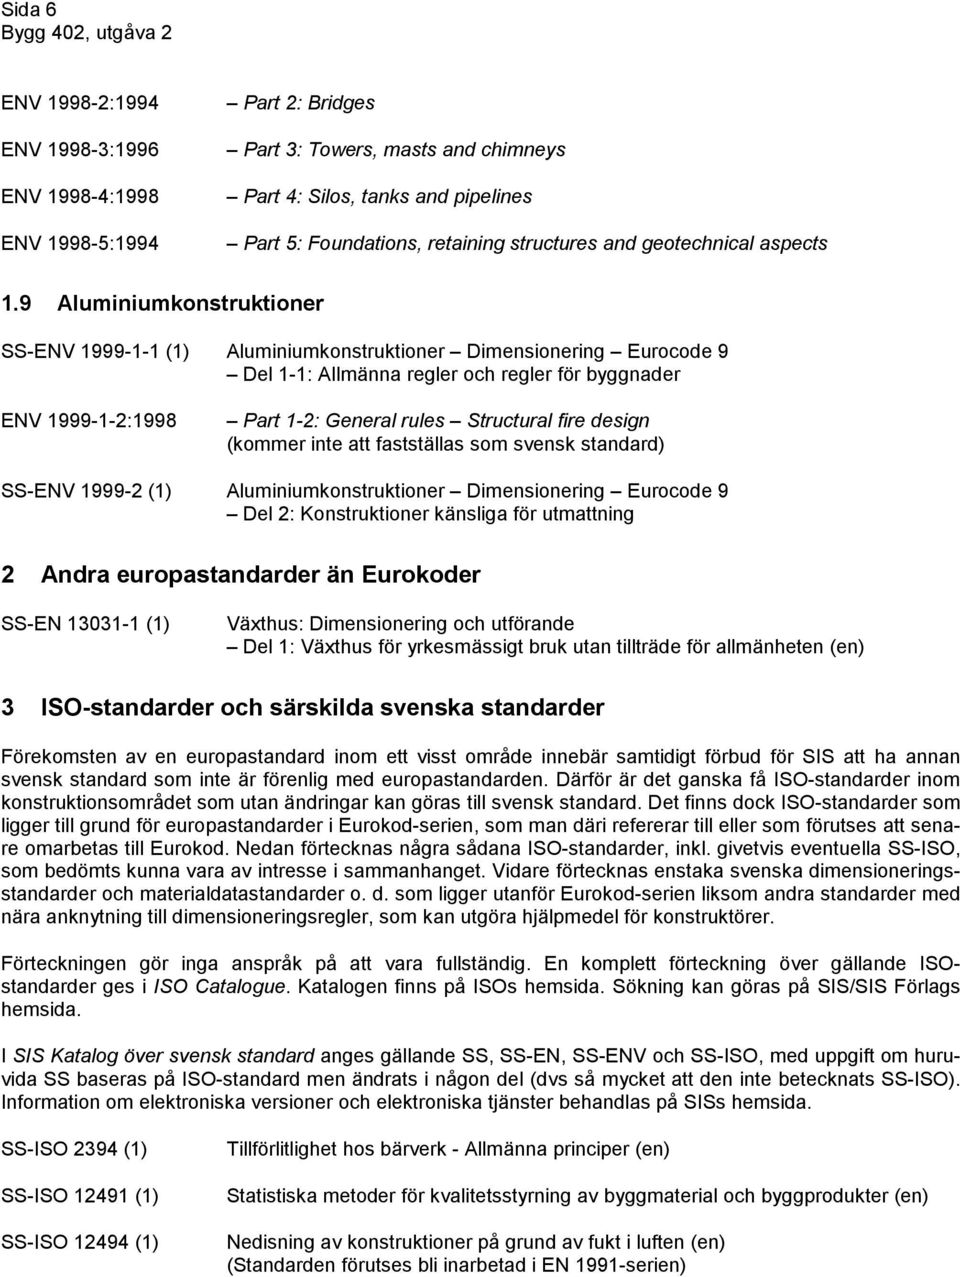 9 Aluminiumkonstruktioner SS-ENV 1999-1-1 (1) Aluminiumkonstruktioner Dimensionering Eurocode 9 Del 1-1: Allmänna regler och regler för byggnader ENV 1999-1-2:1998 Part 1-2: General rules Structural